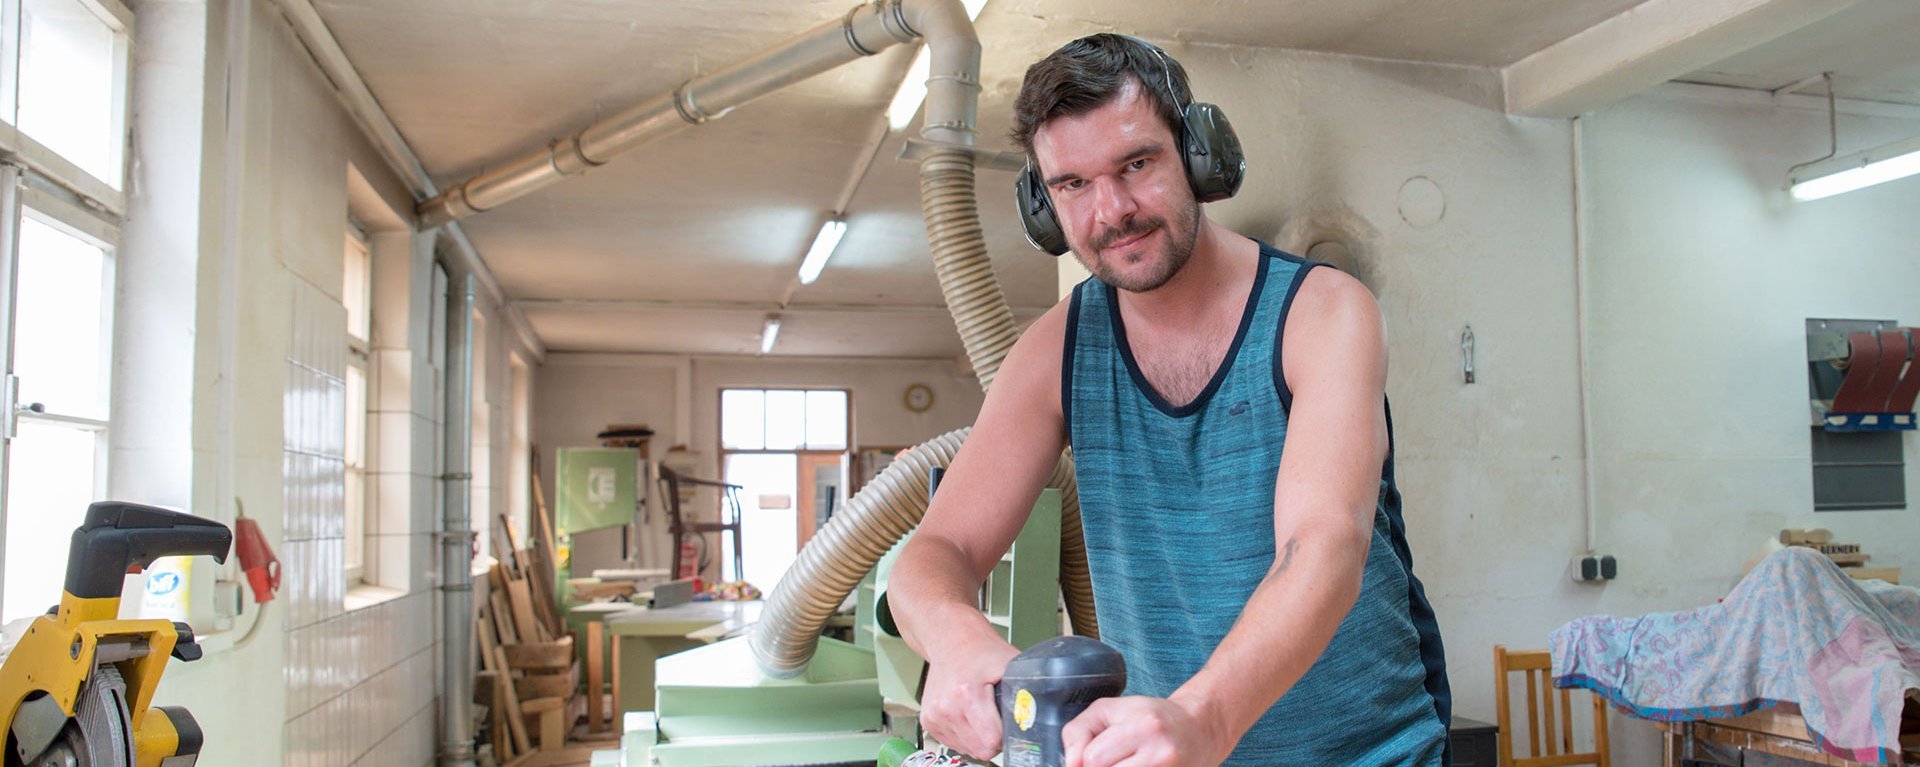 Holzwerkstatt: Ein Mann mit Gehörschutz arbeitet mit der Schleifmaschine